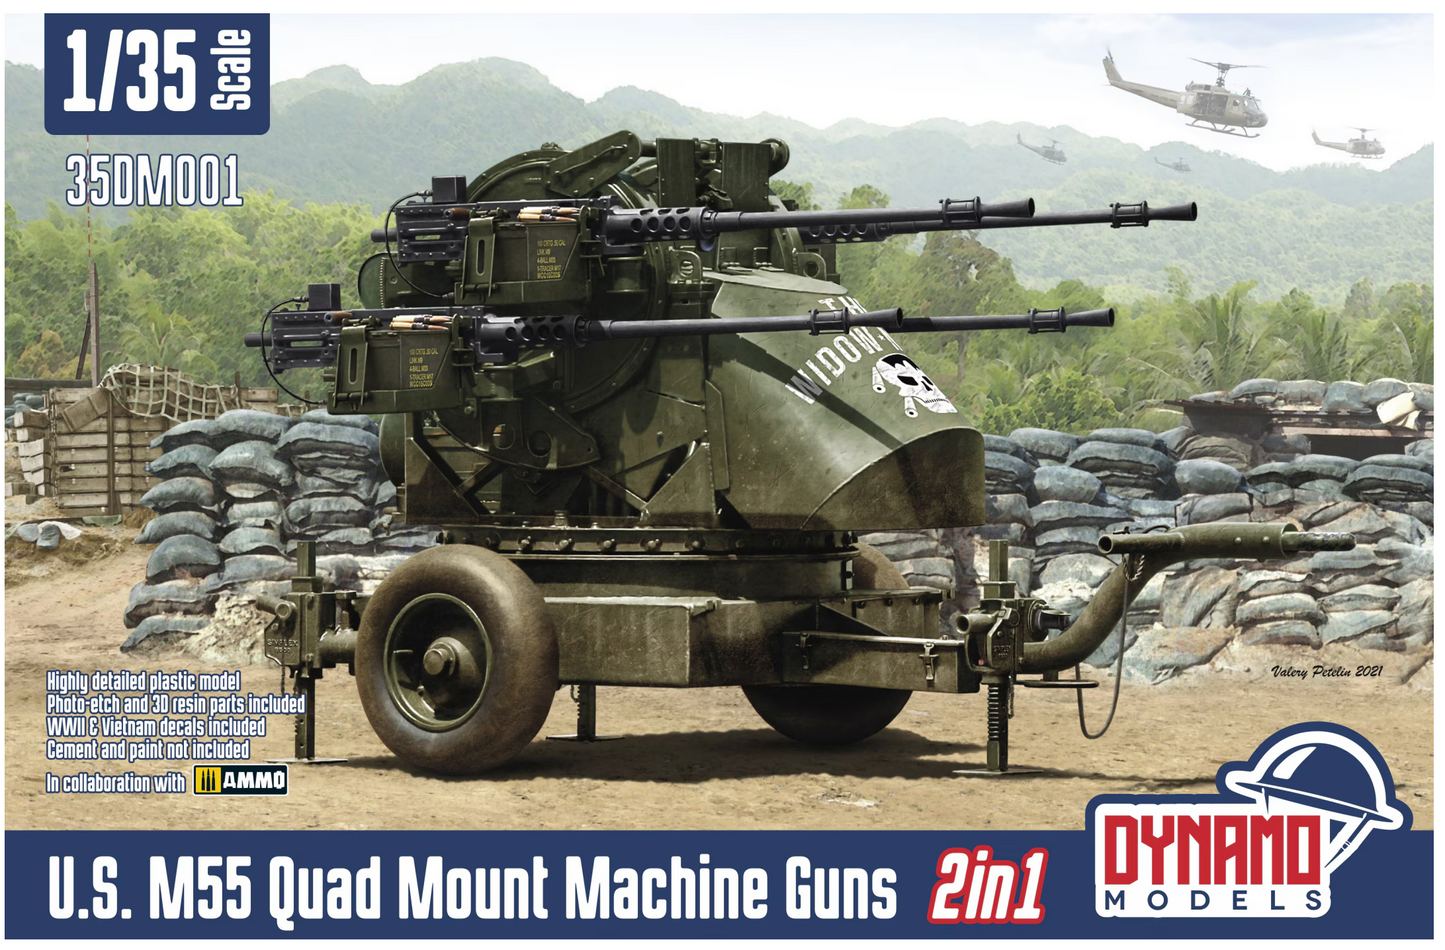 U.S. M55 Quad Mount Machine Guns 2in1